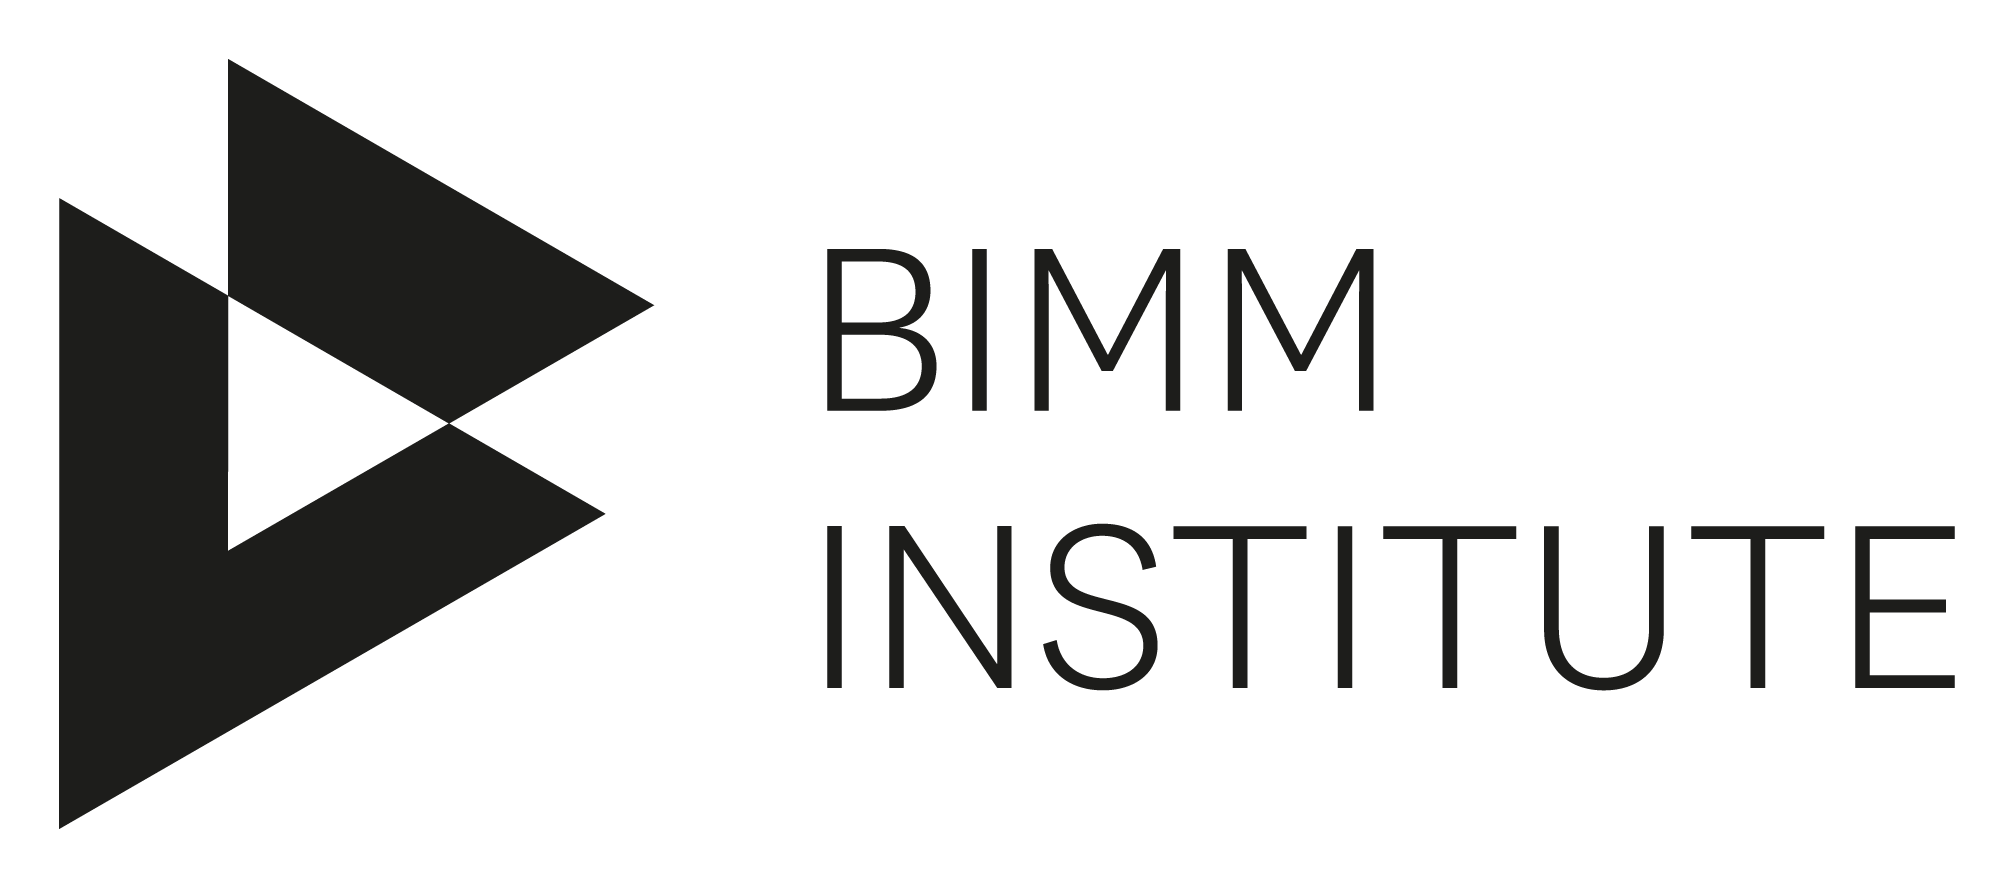 BIMM Institute logo